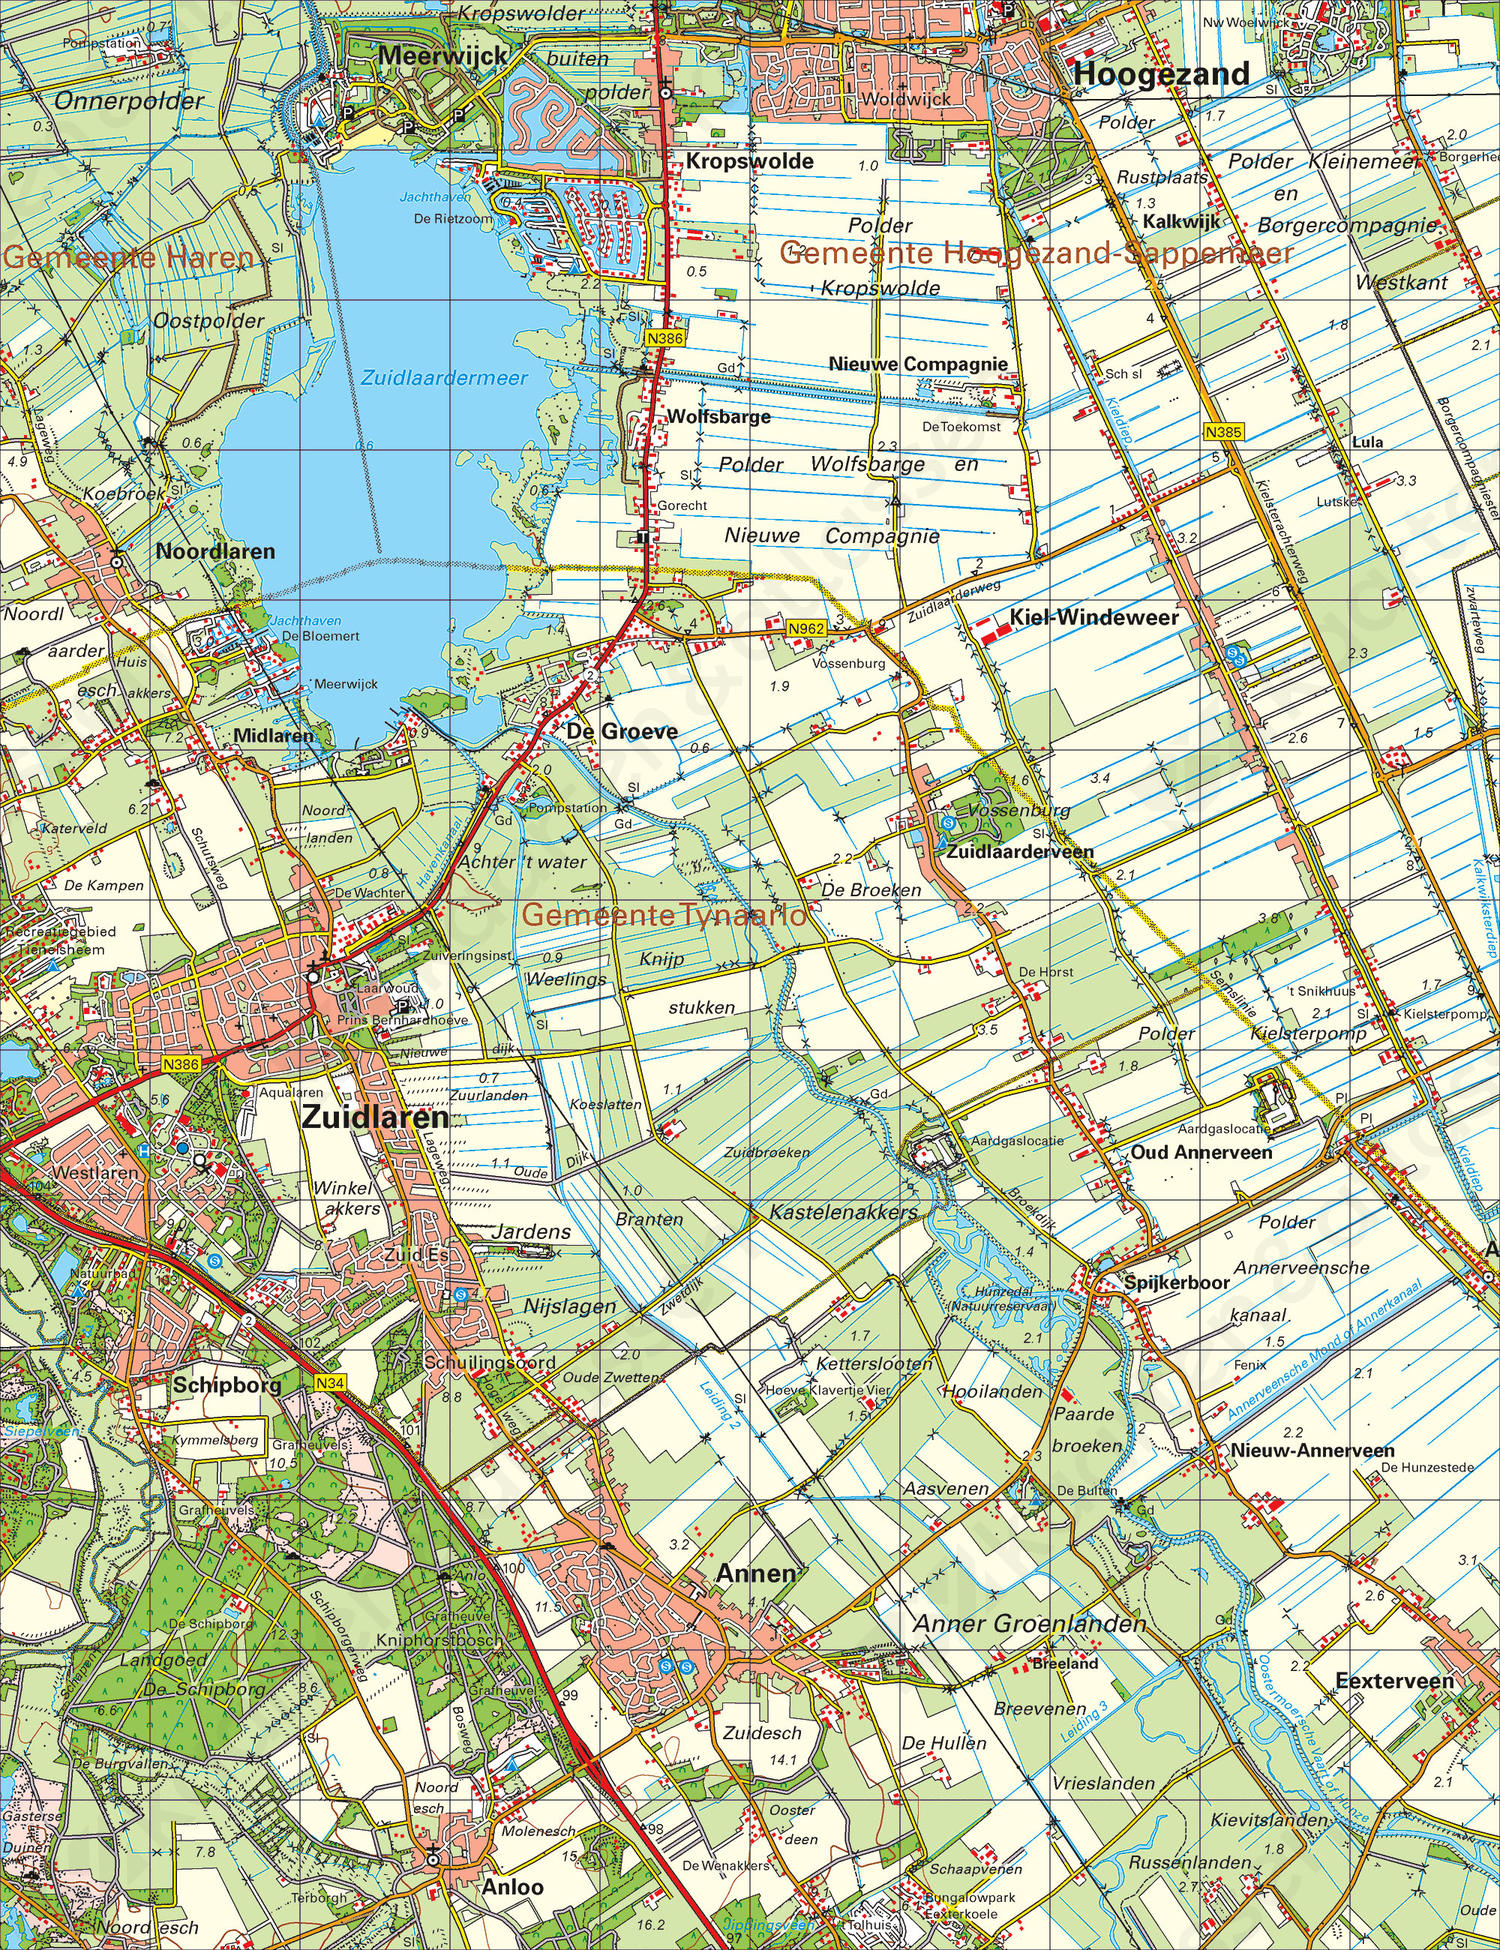 Topografische Atlas van Noord Nederland 1 50 000 Kaarten en Atlassen nl